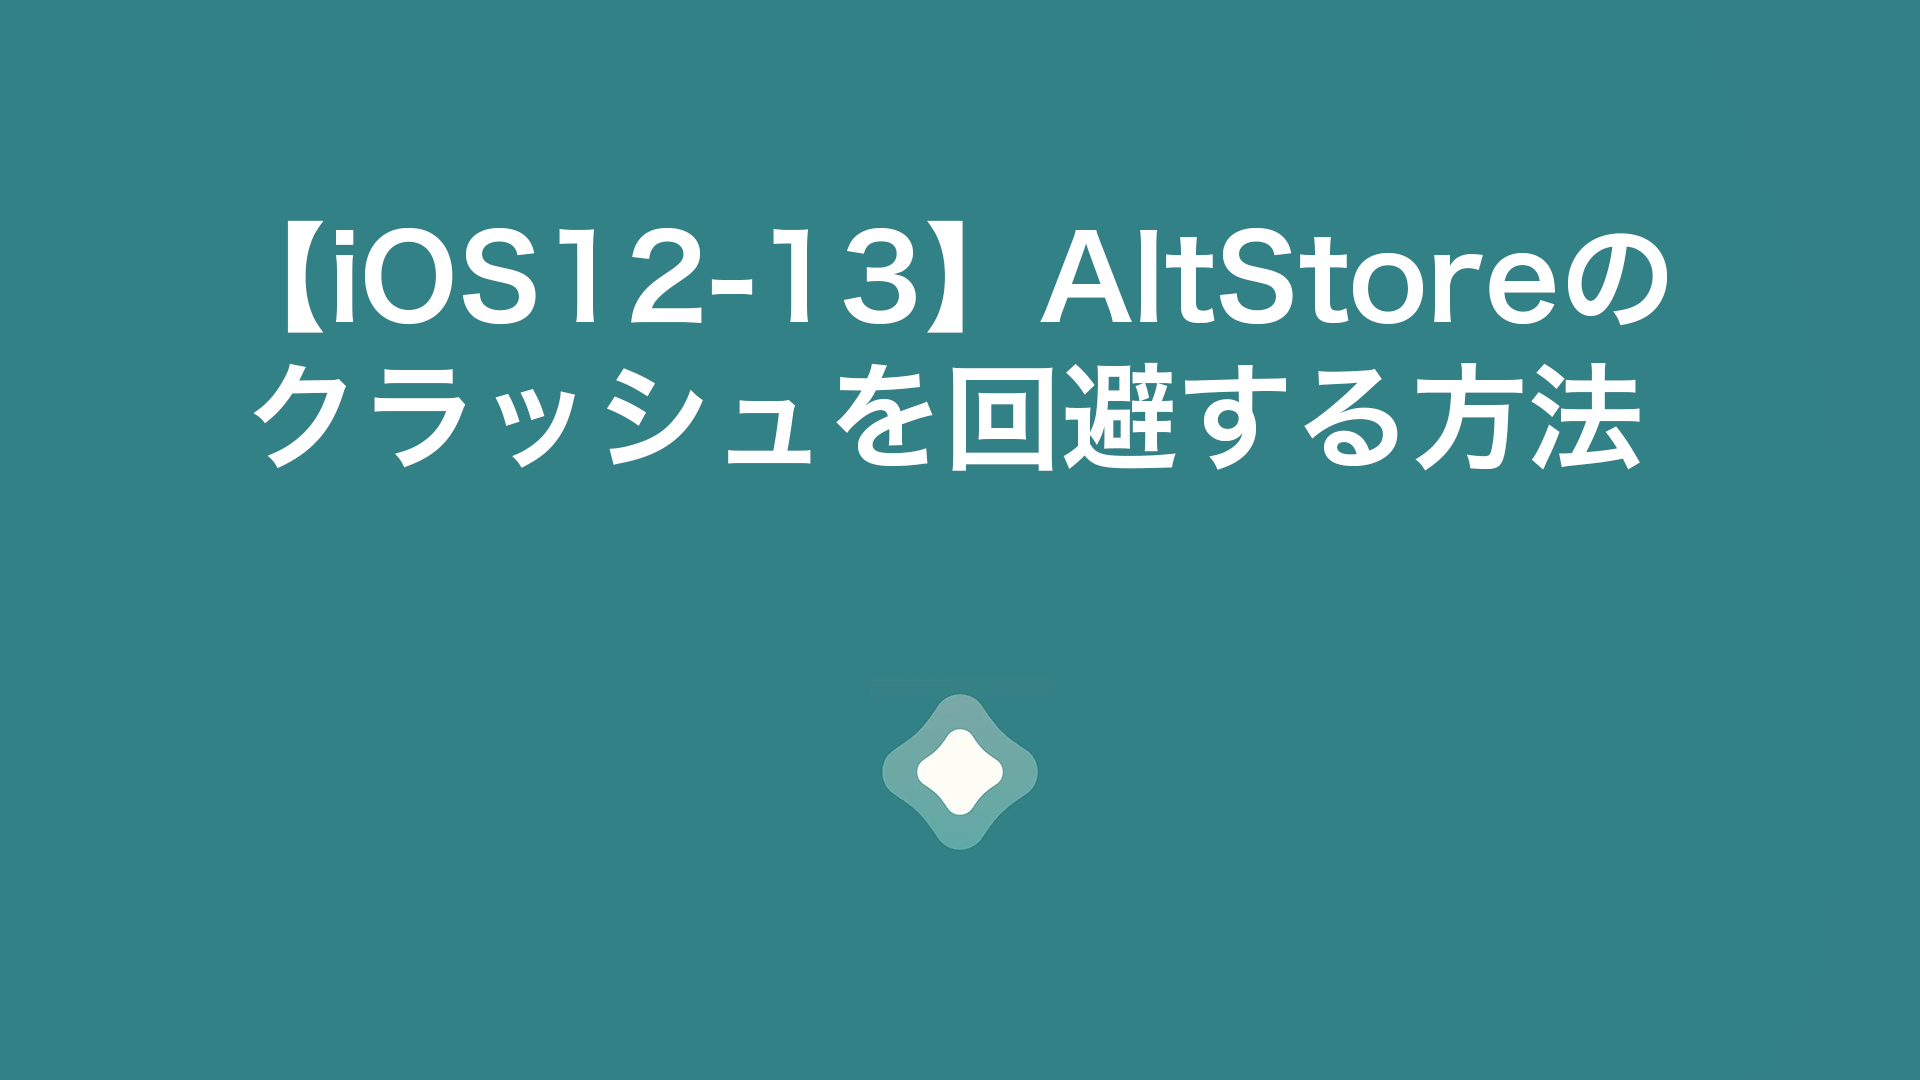 altstore crash 1 - 【iOS12-13】AltStoreの クラッシュを回避する方法